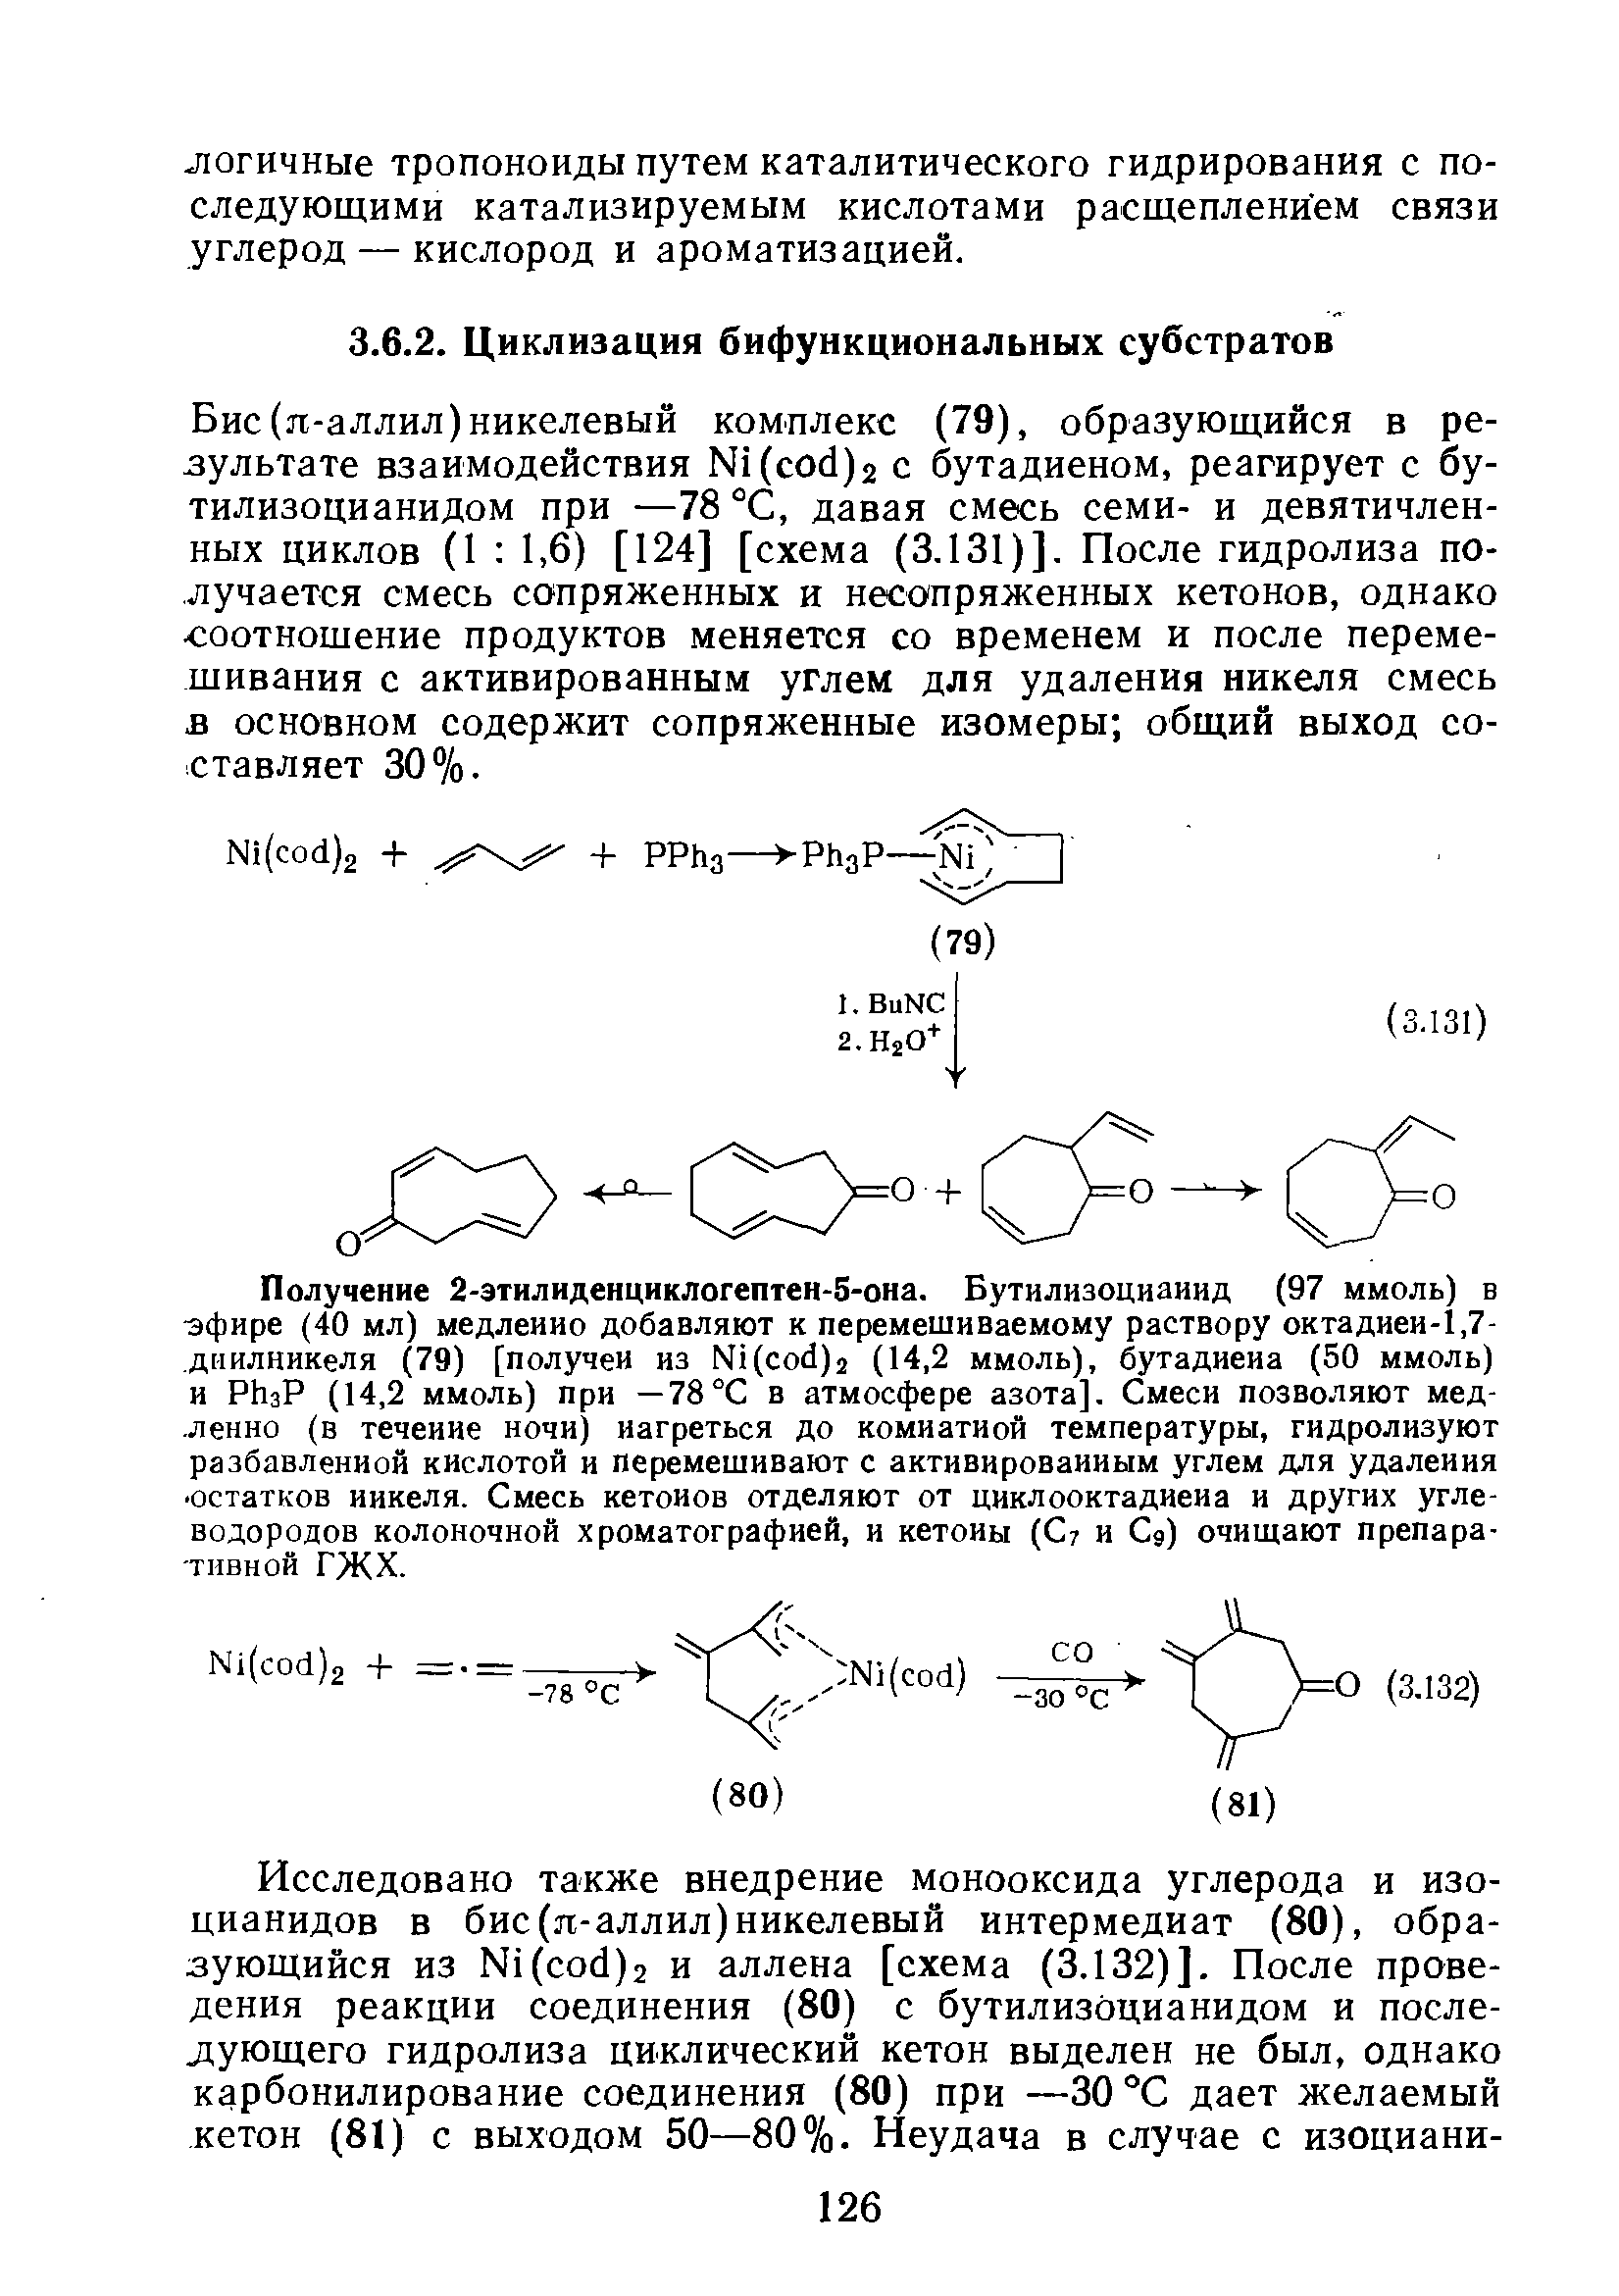 Бис (я-аллил) никелевый комплекс (79), образующийся в результате взаимодействия Ы1(сос1)2 с бутадиеном, реагирует с бу-тилизоцианидом при —78 °С, давая смесь семи- и девятичленных циклов (1 1,6) [124] [схема (3.131)]. После гидролиза получается смесь сопряженных и несопряженных кетонов, однако соотношение продуктов меняется со временем и после перемешивания с активированным углем для удаления никеля смесь в основном содержит сопряженные изомеры общий выход составляет 30%.